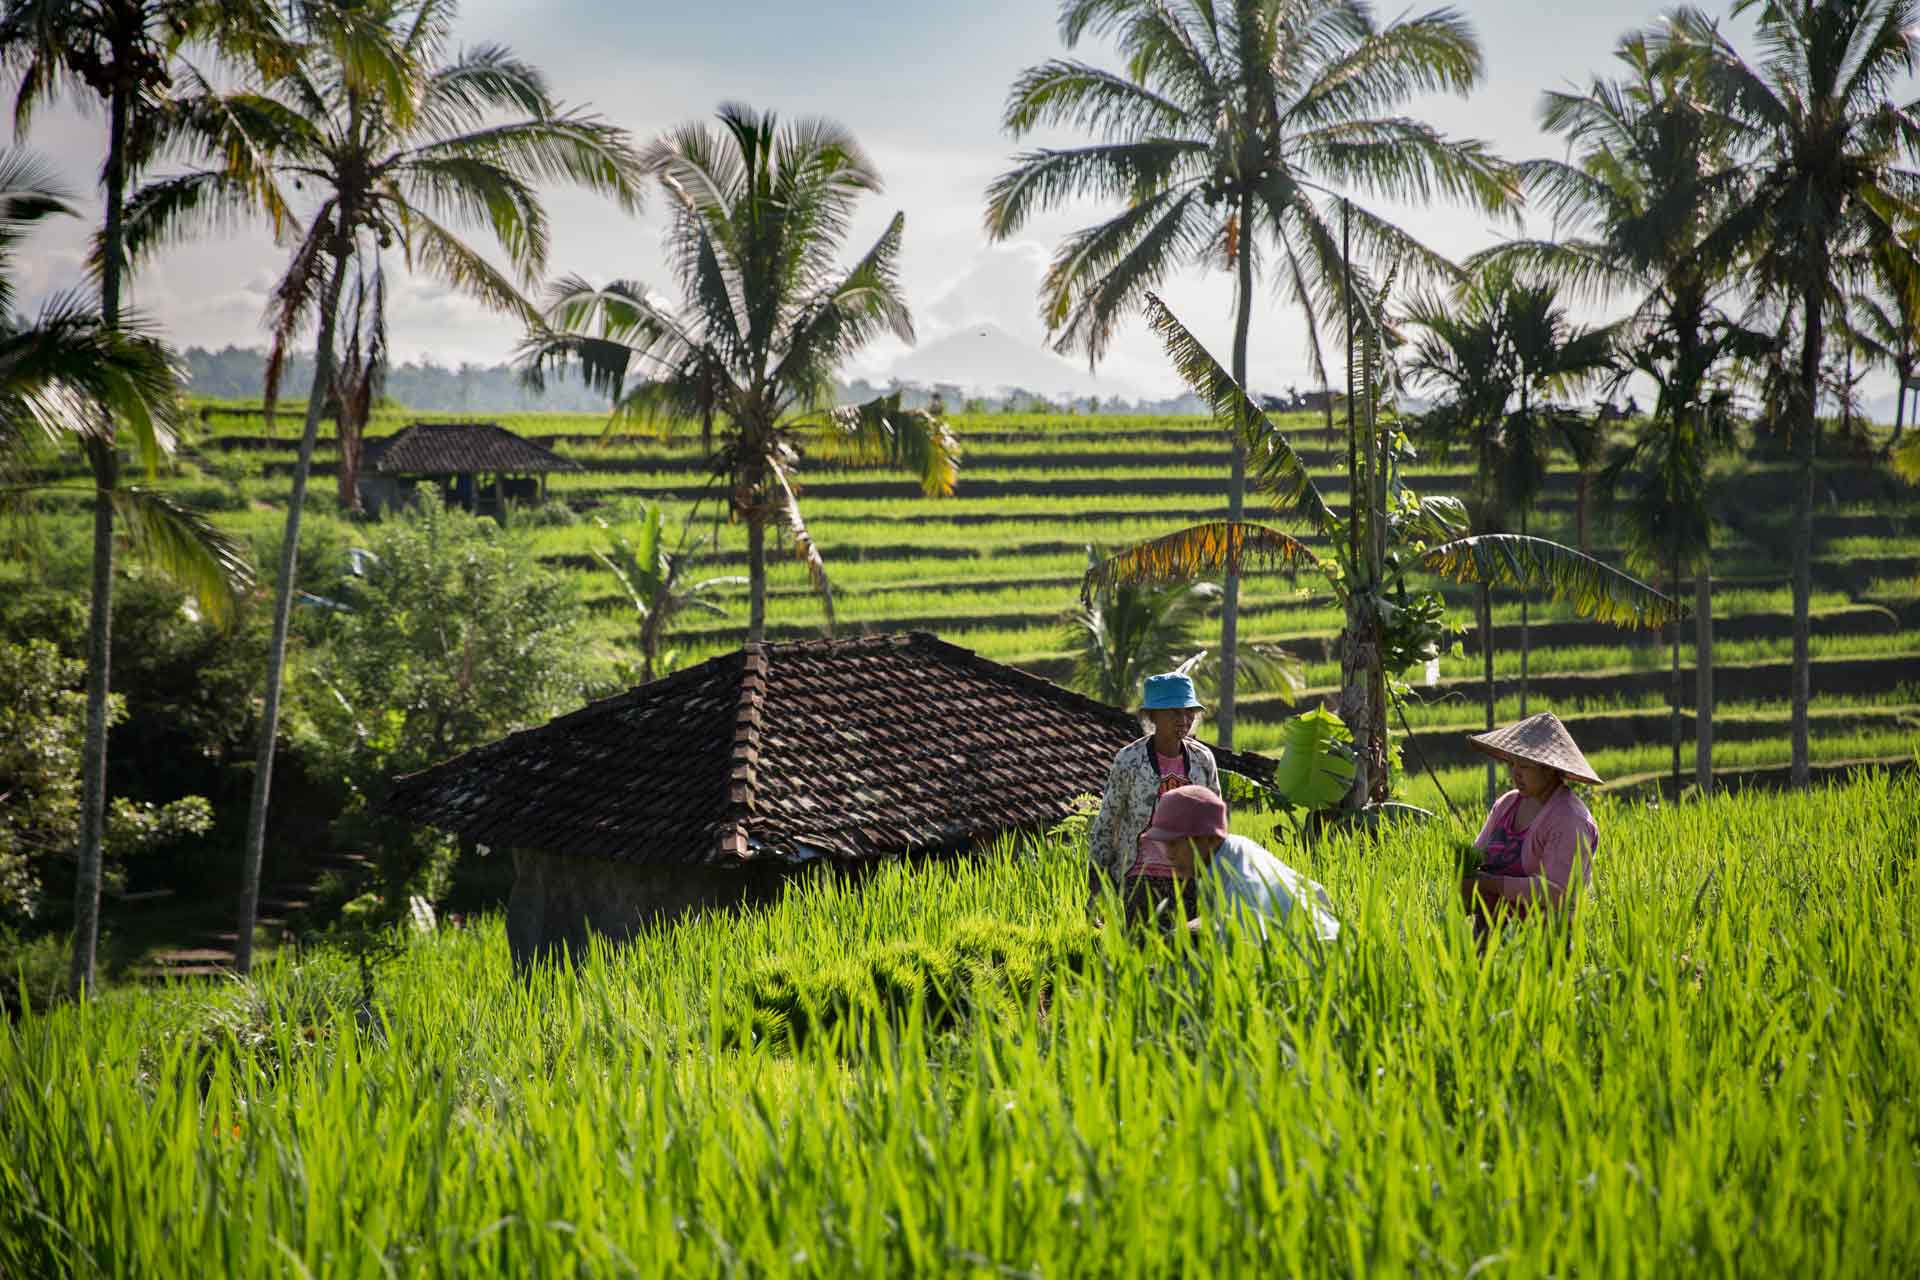 Bali-Indonesia-Jatiluwih-rice